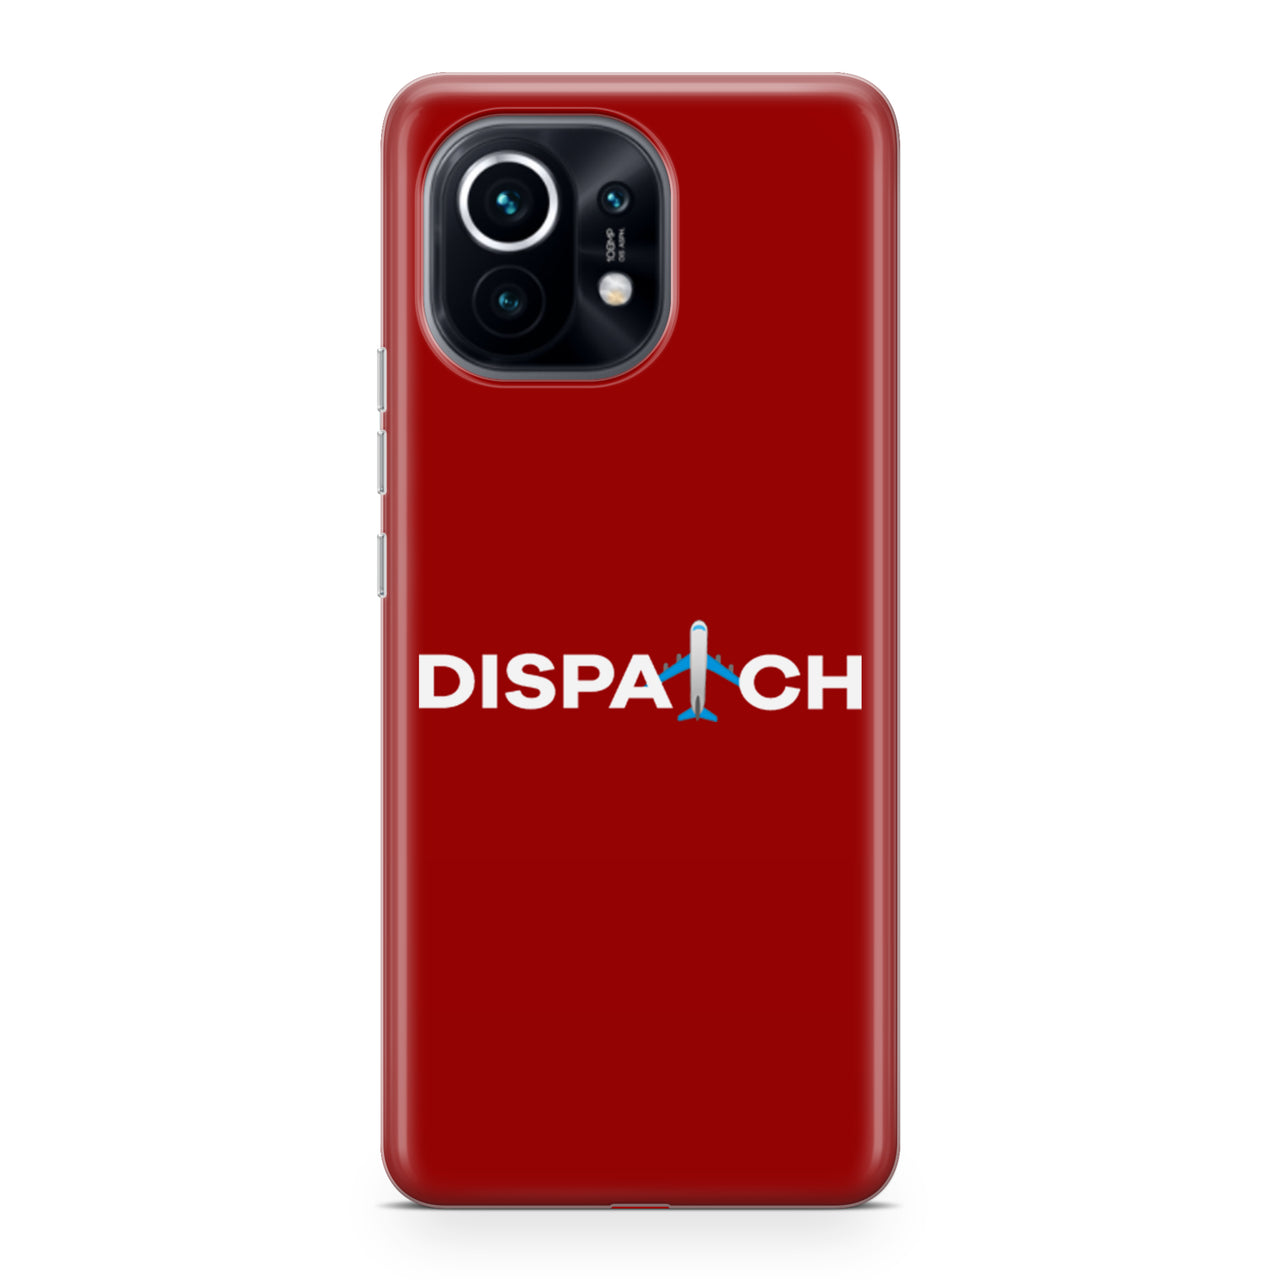 Dispatch Designed Xiaomi Cases